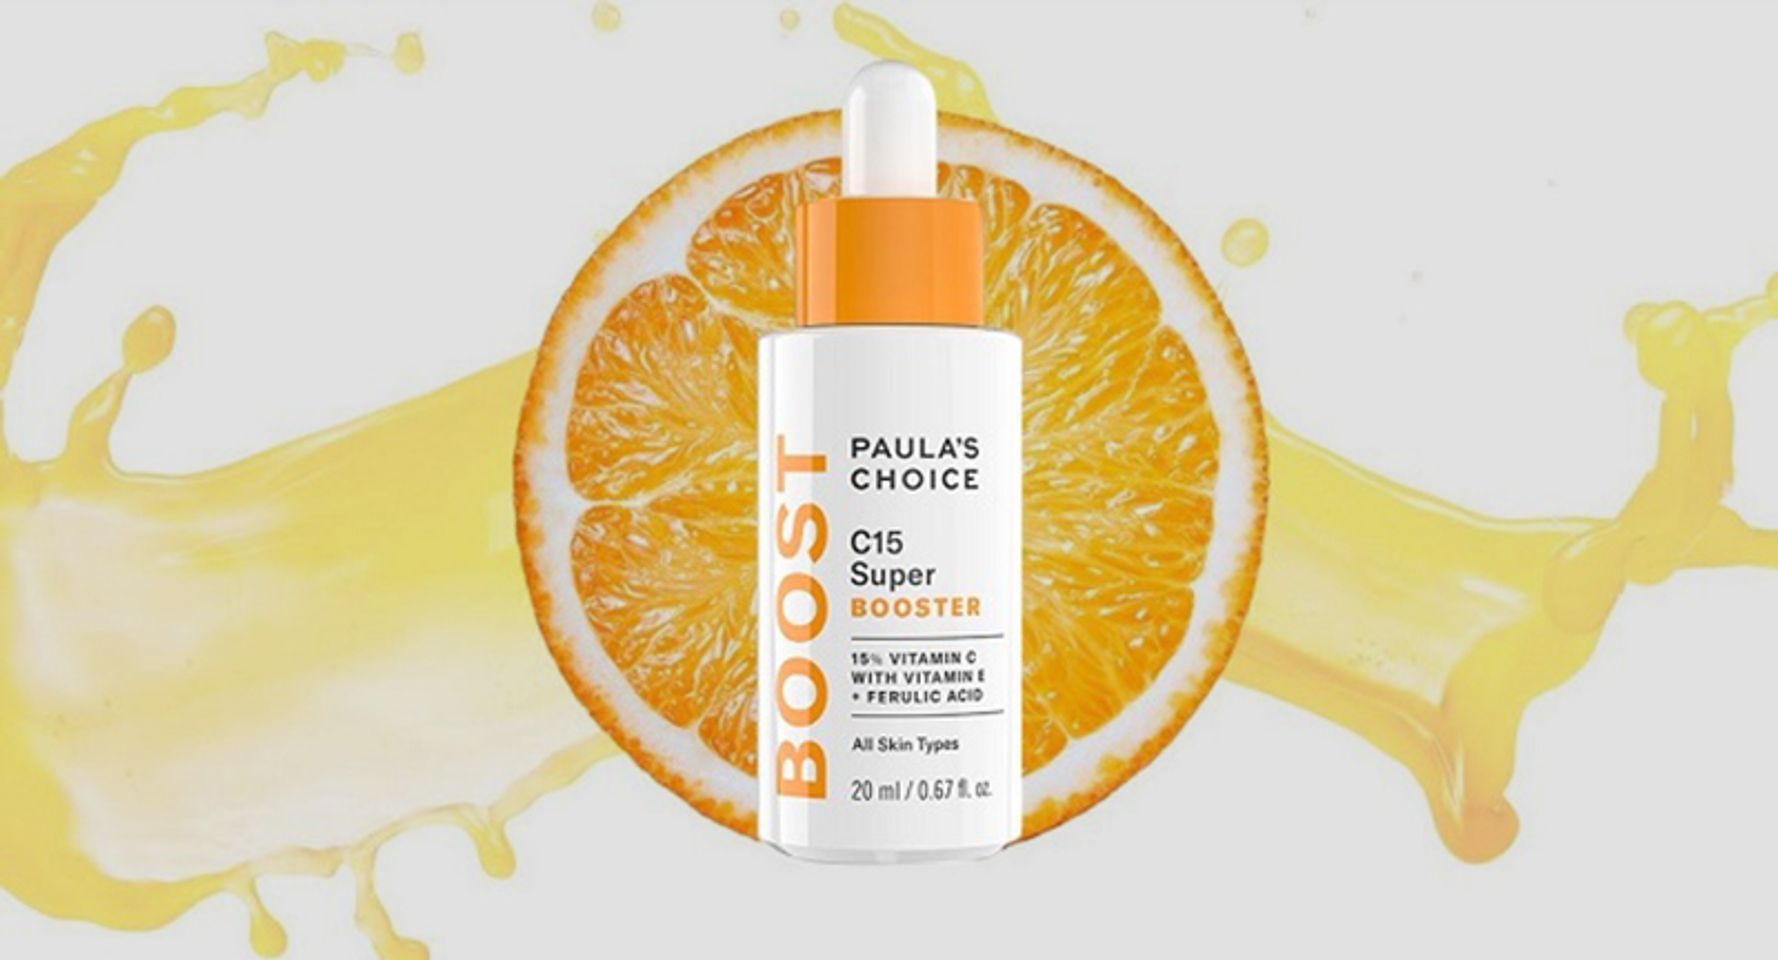 Tinh chất Paula’s Choice C15 Super Booster hỗ trợ dưỡng sáng da